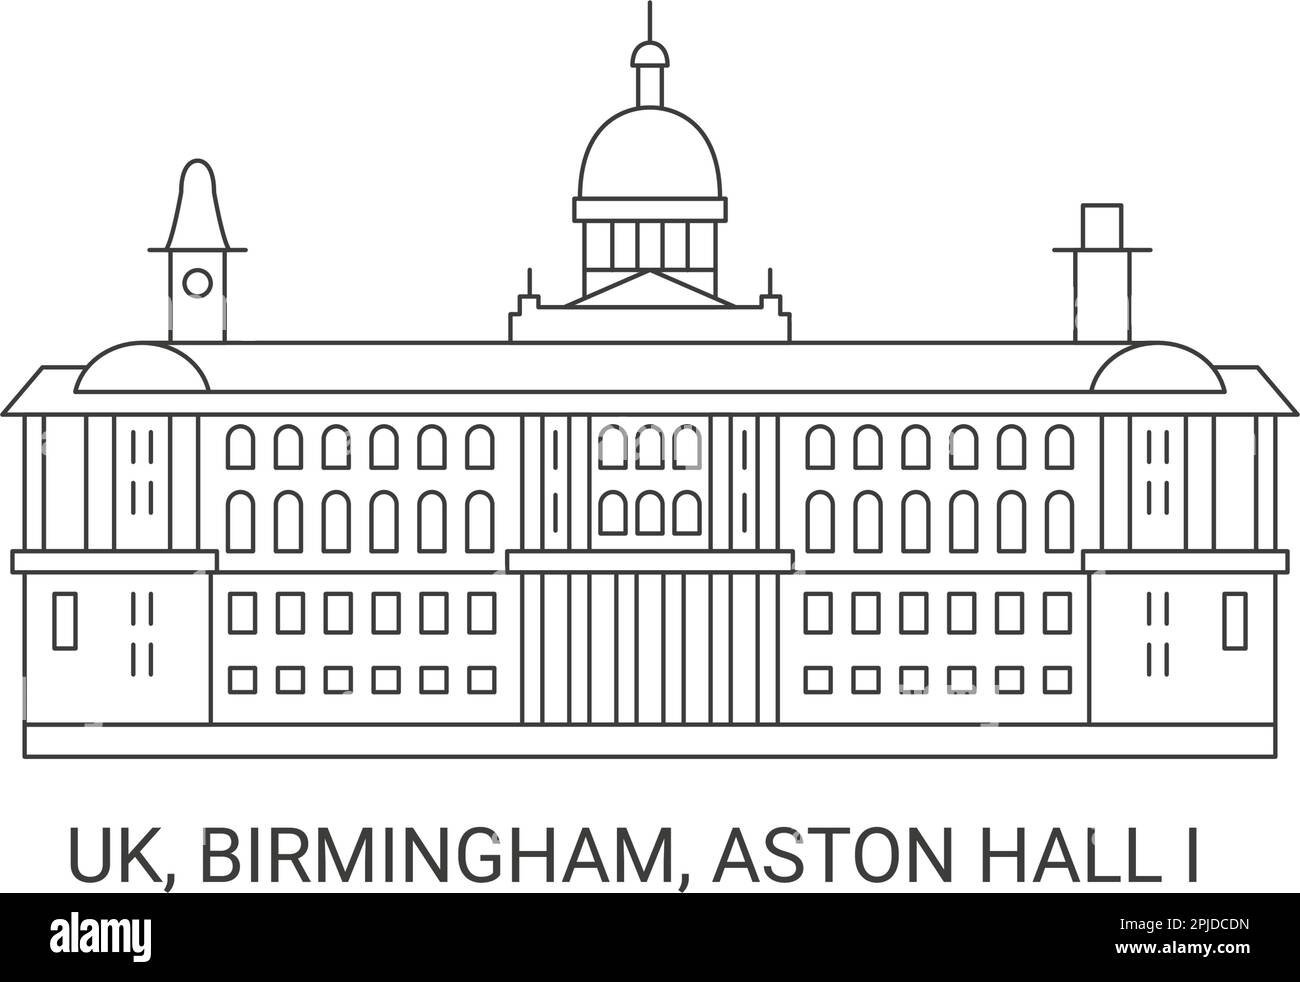 Inghilterra, Birmingham, Aston Hall i, illustrazione vettoriale di riferimento di viaggio Illustrazione Vettoriale